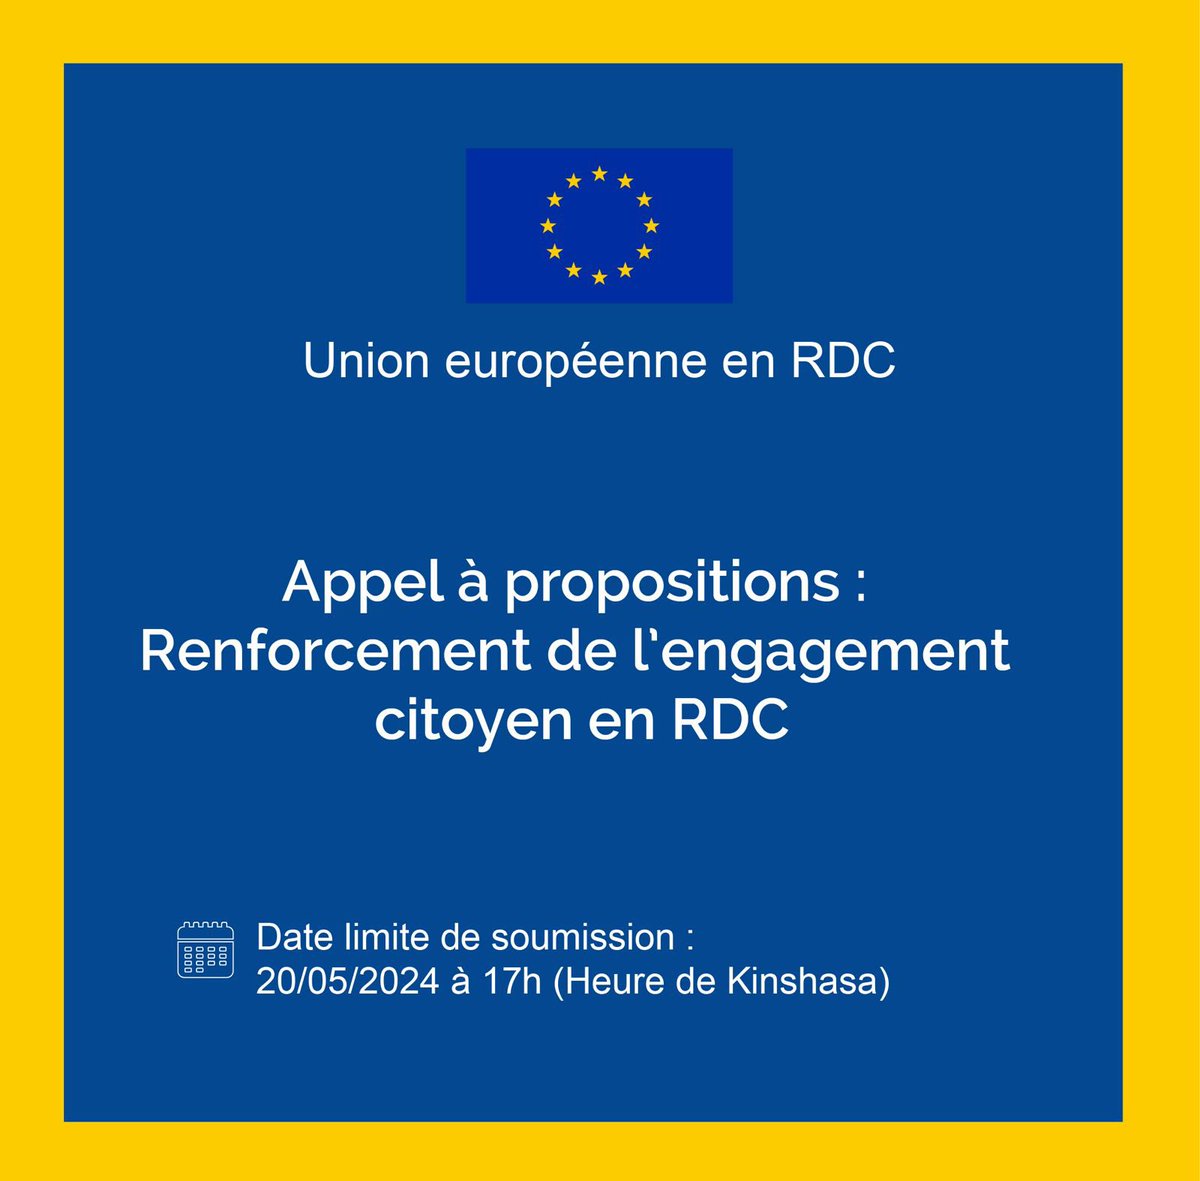 📣 @UEenRDC lance un APPEL à PROPOSITIONs pour renforcer l’engagement citoyen en #RDC. 🗓️ deadline : 20/05/2024 👉 Session d’info en ligne le 25/04/2024 pour d’éventuelles questions. 👉 Plus d’infos sur les modalités de soumission miniurl.be/r-5cdo